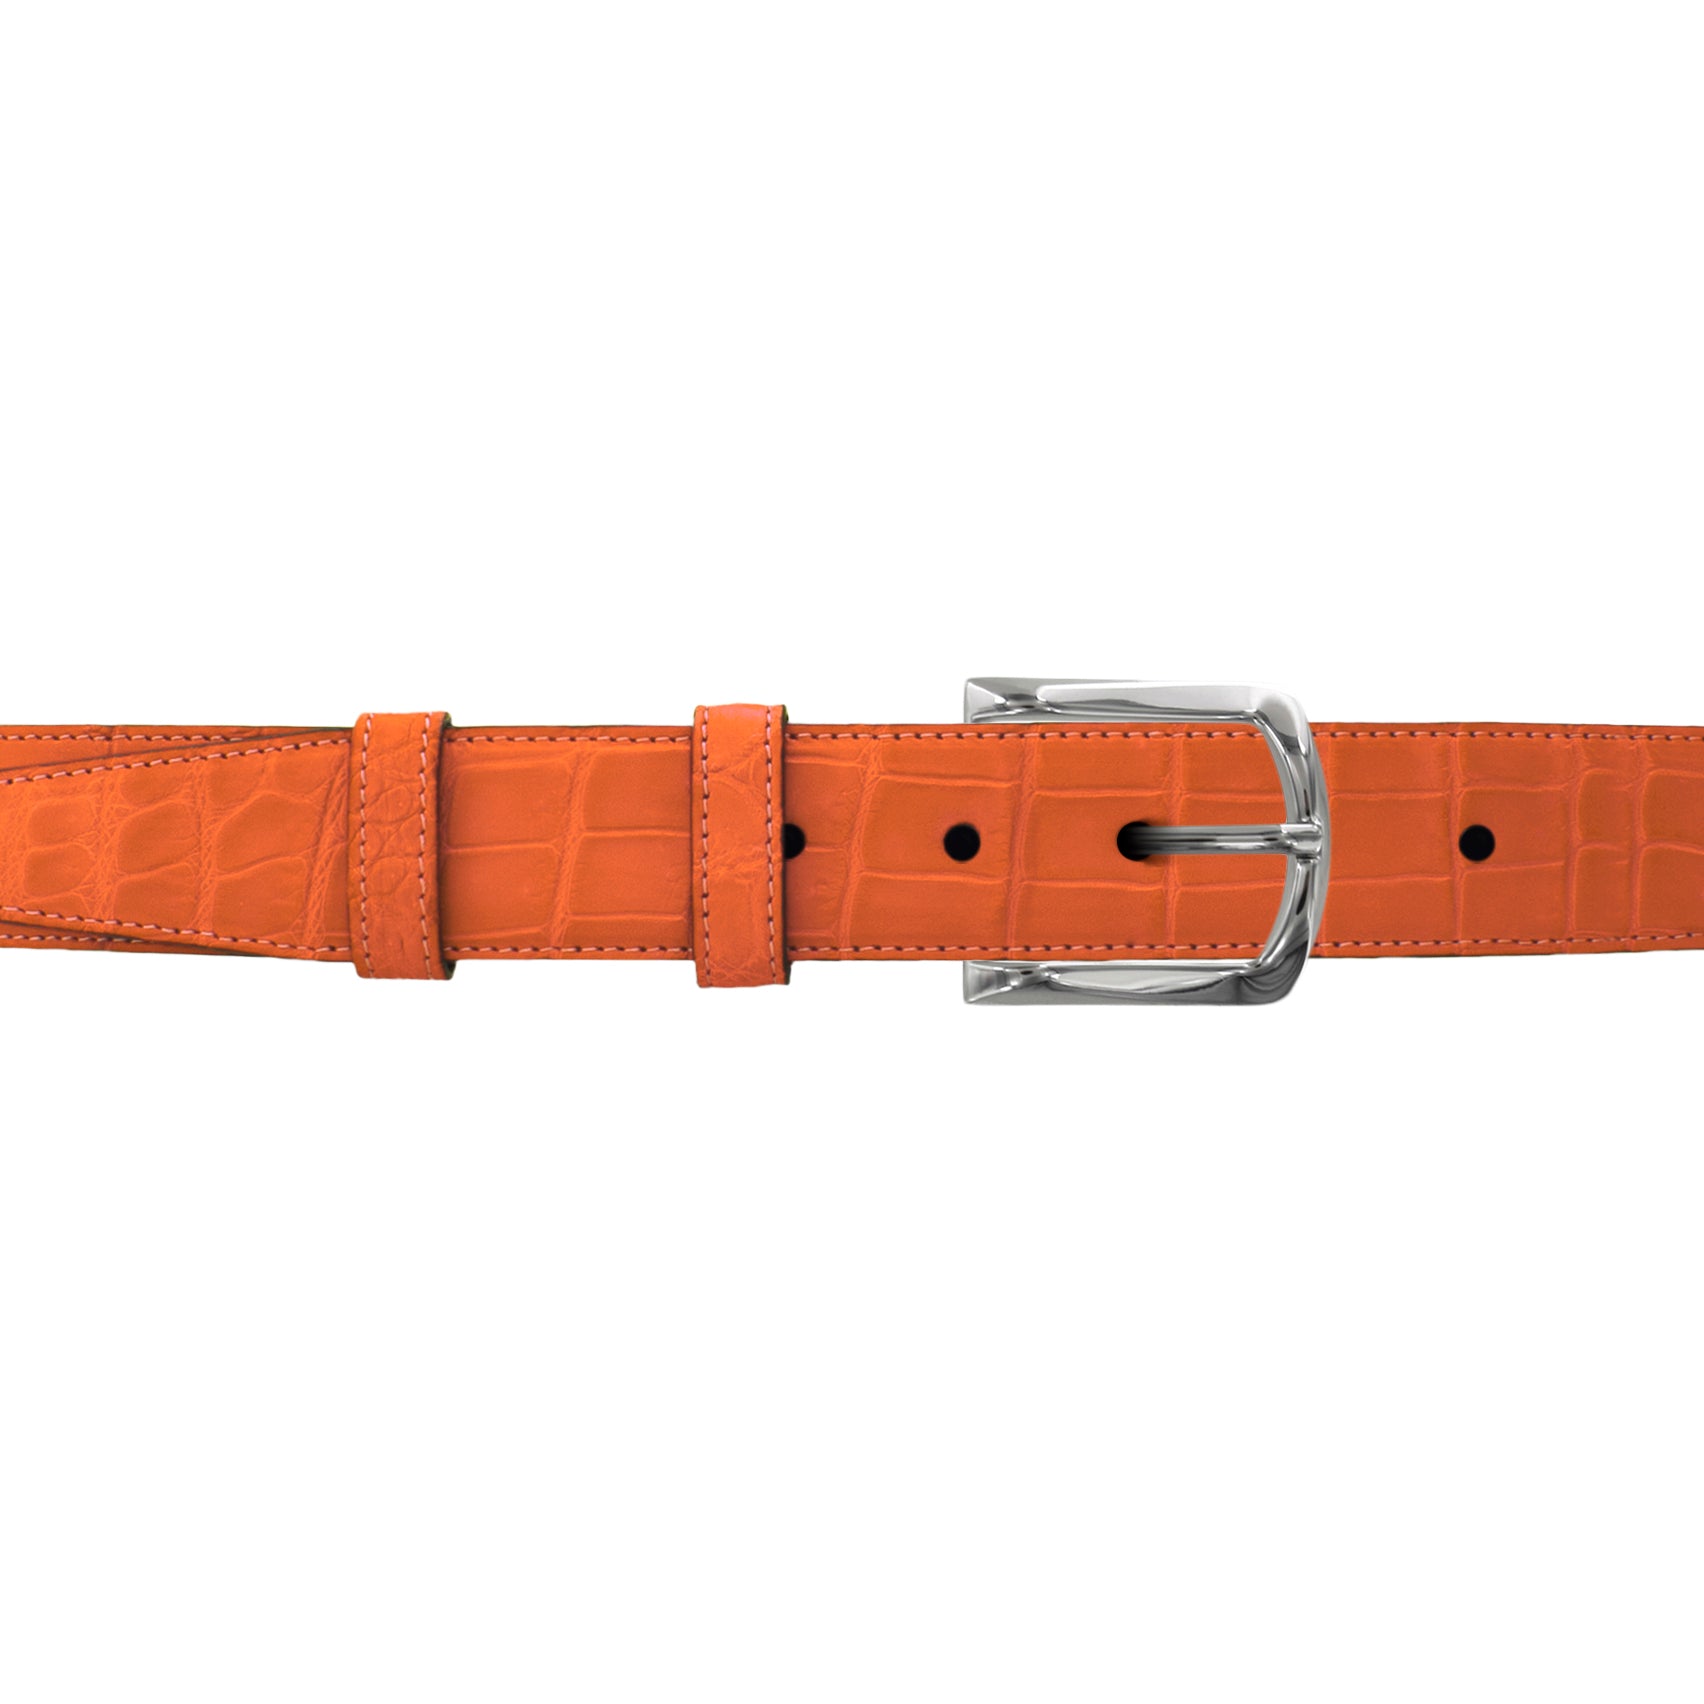 1 1/4" Orange Seasonal Belt with Sutton Dress Buckle in Polished Nickel